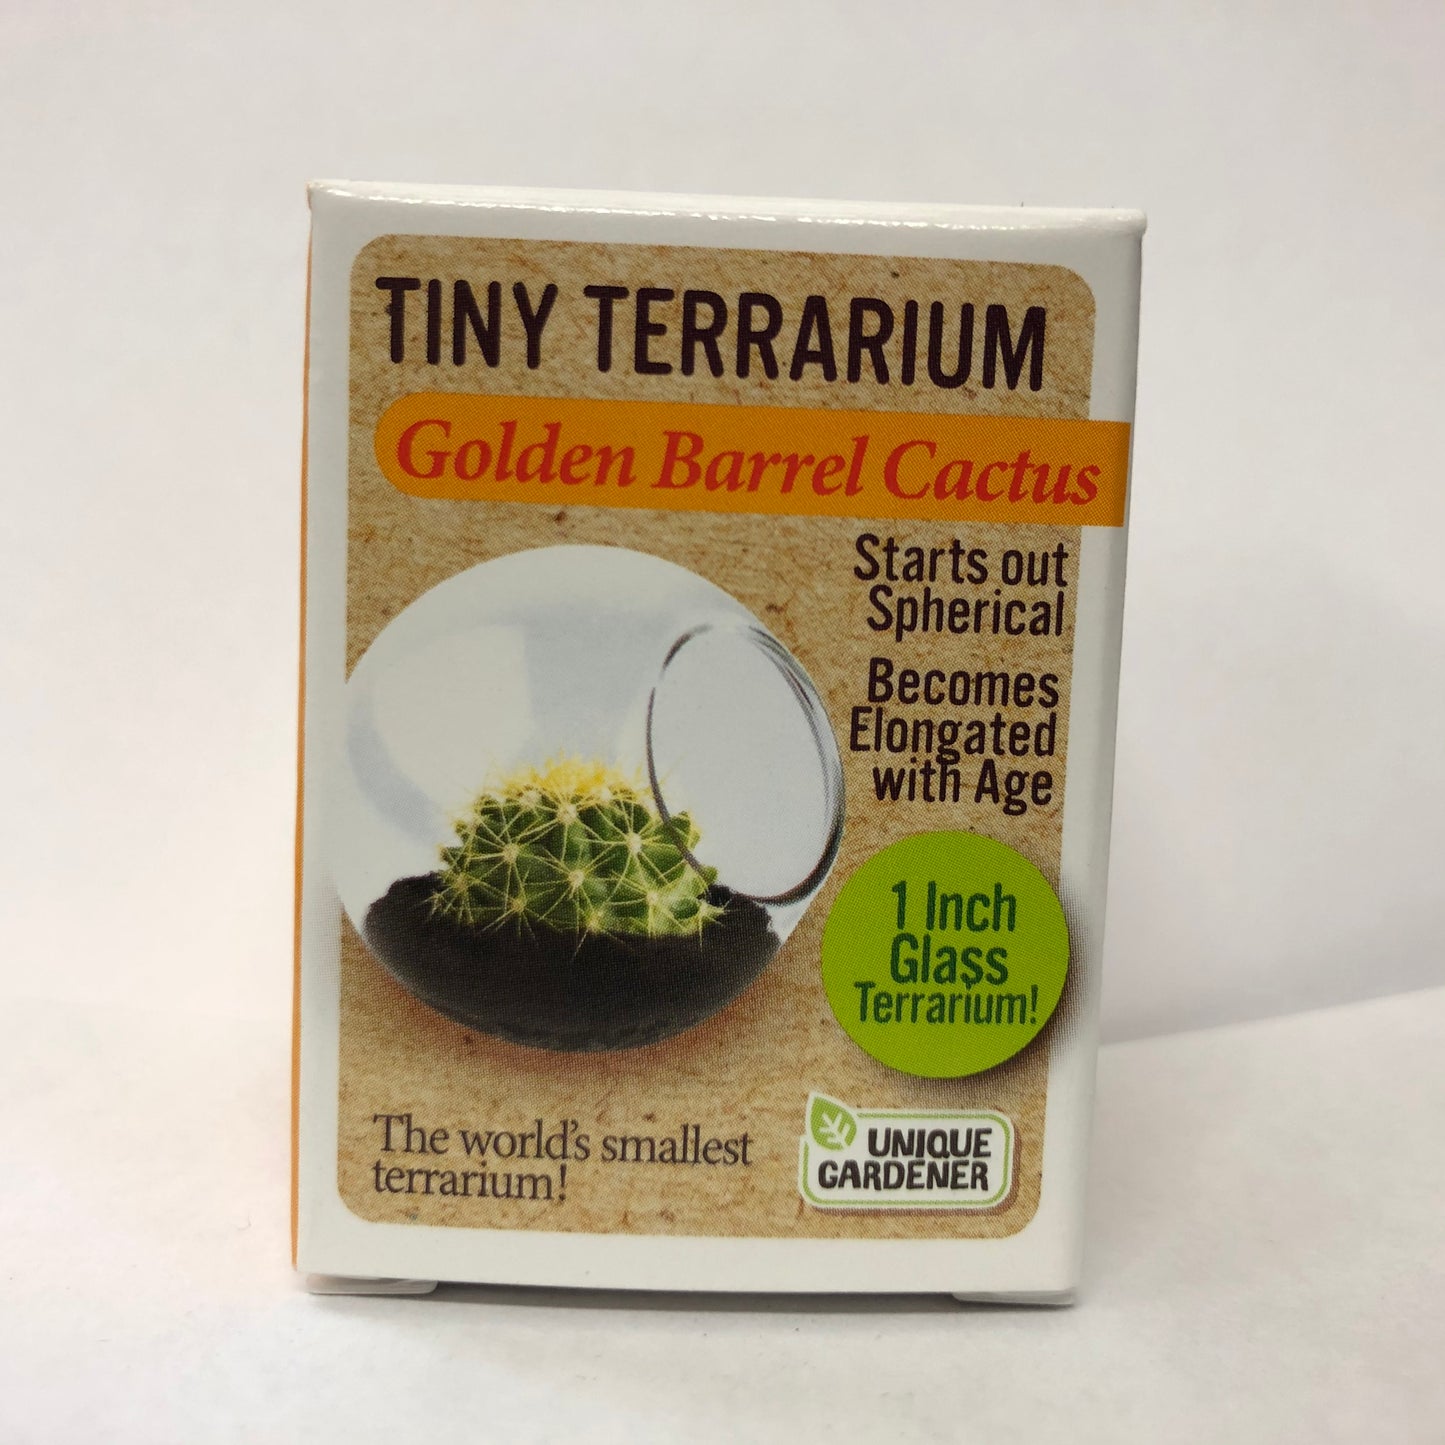 Tiny Terrarium Assorted Cactus or Sedums